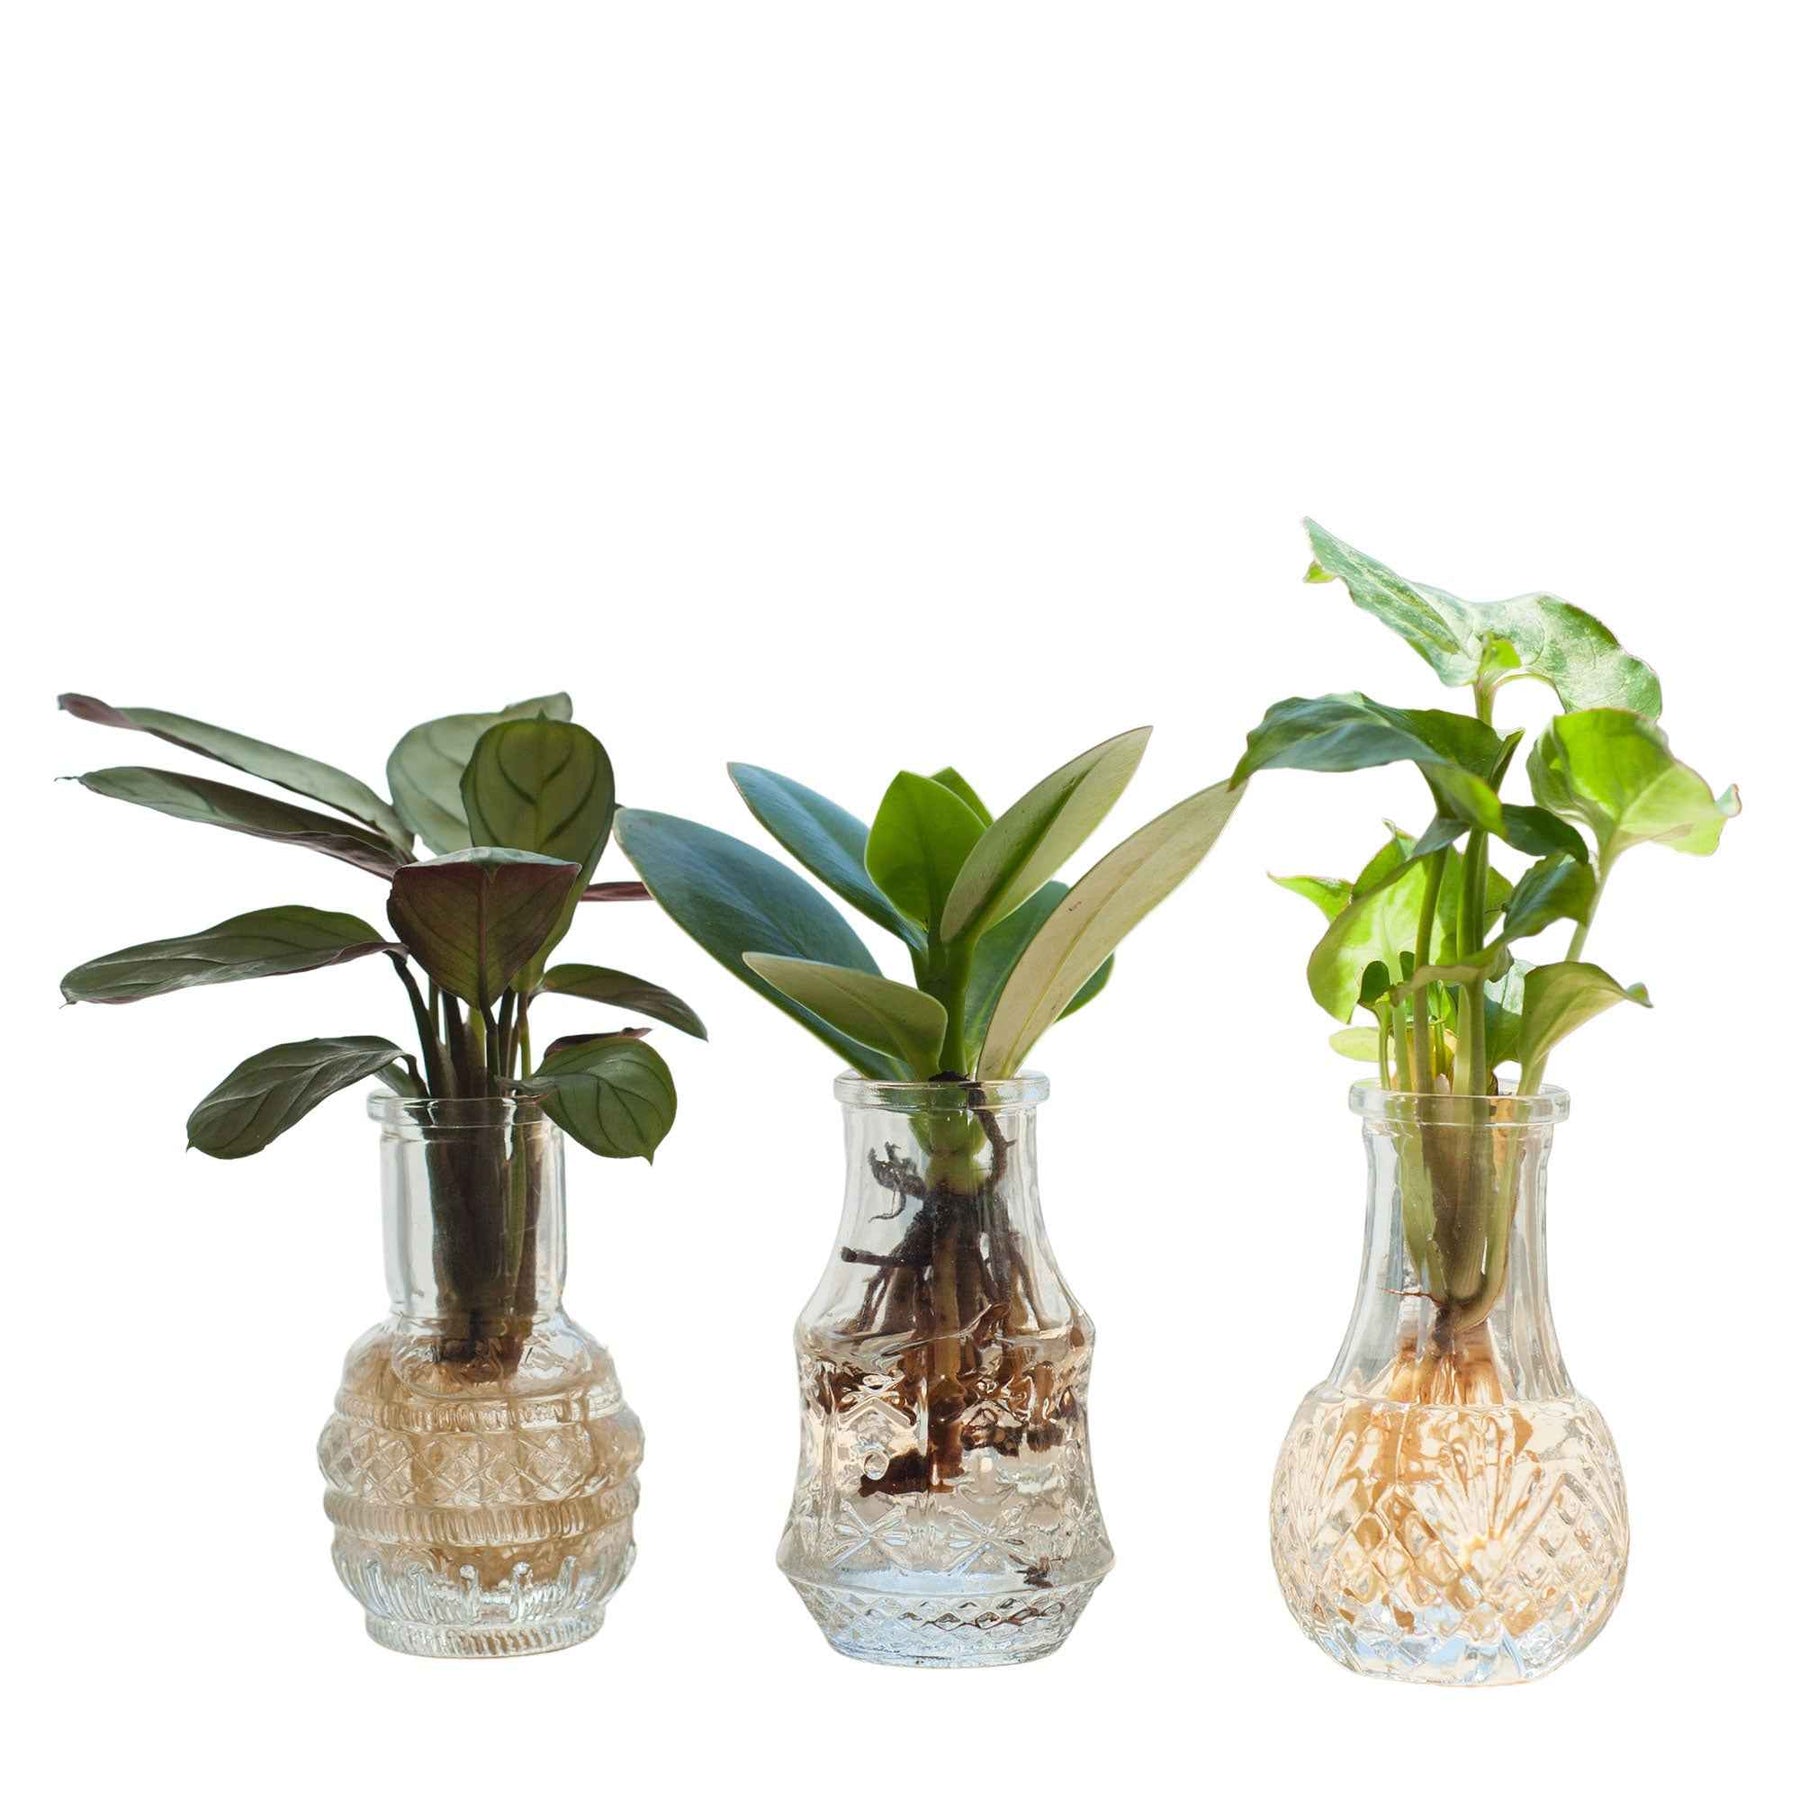 6 Mélanges hydroponiques + 3 vases - Syngonium 'Pixie', Clusia 'Princess', Ctenanthe 'Amagris' - Plantes